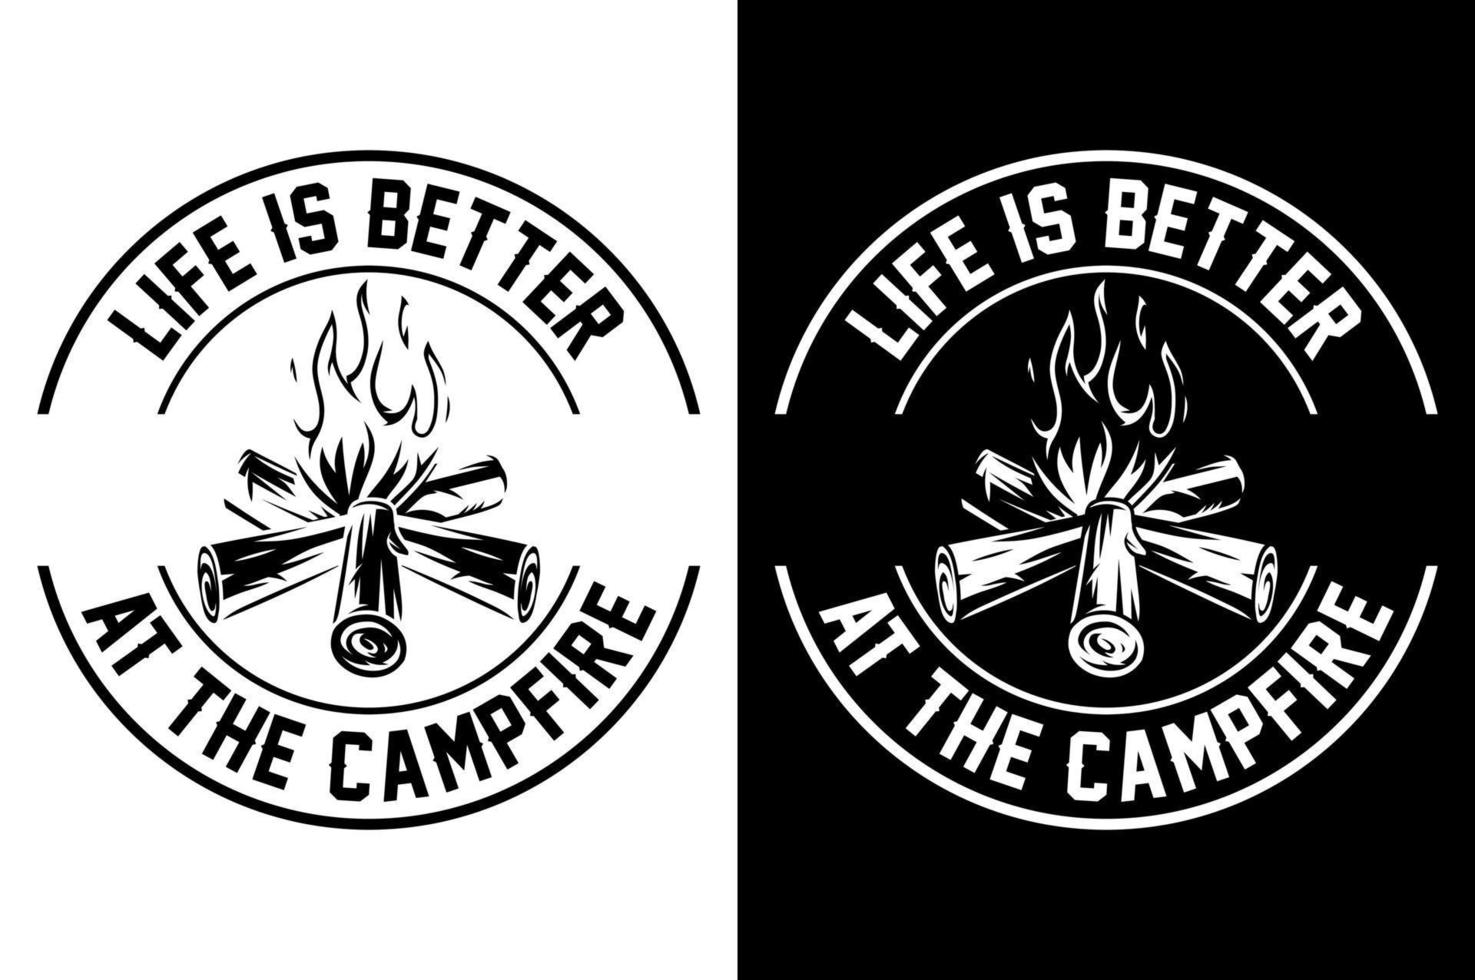 camping typografie citaten t overhemd vector illustratie ontwerp